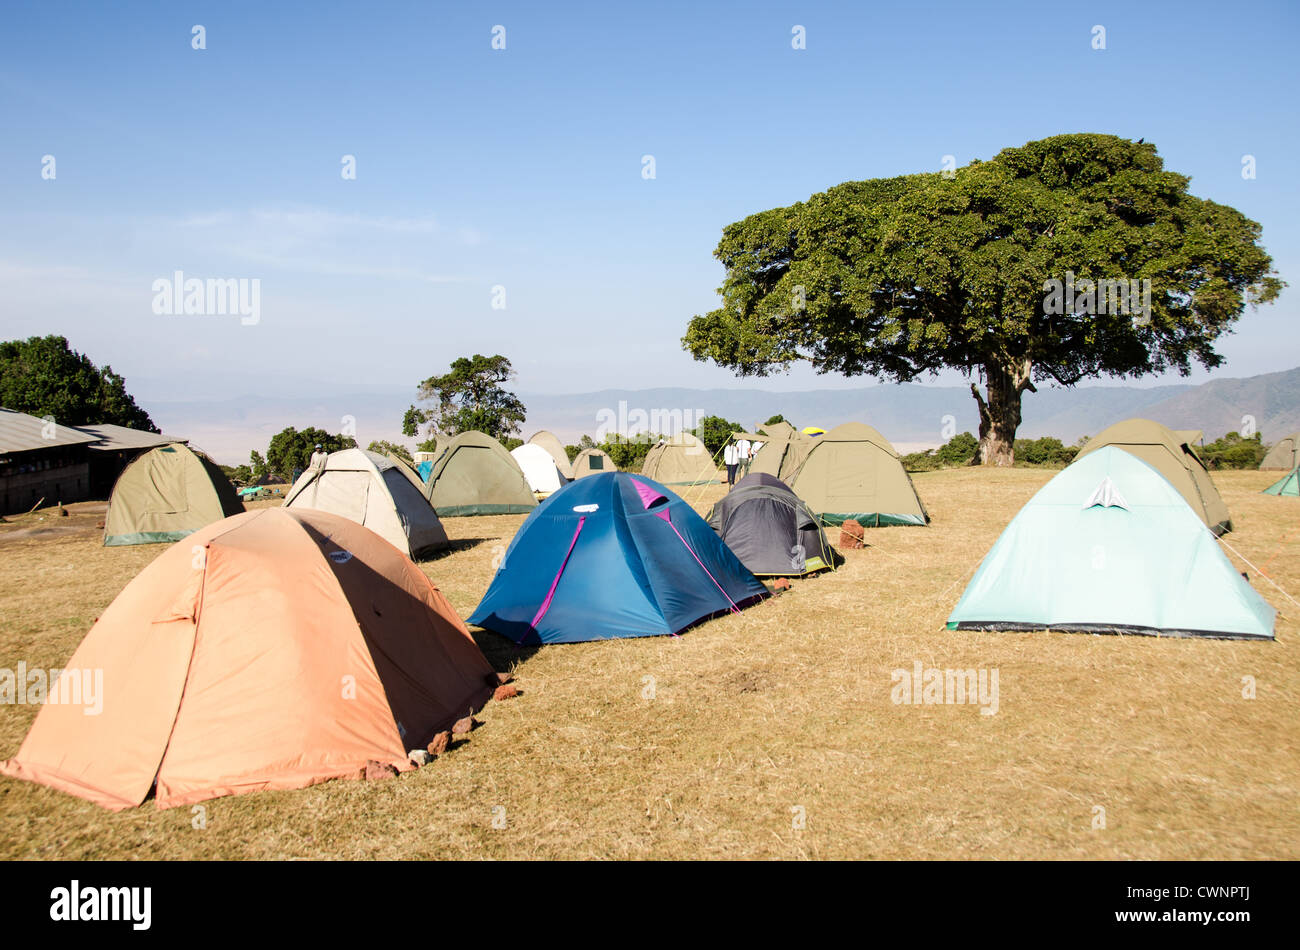 ZONE DE CONSERVATION DE NGORONGORO, Tanzanie - tentes au camping de Simba sur le bord du cratère de Ngorongoro dans la zone de conservation de Ngorongoro, qui fait partie du circuit nord de la Tanzanie de parcs nationaux et de réserves naturelles. Le cratère de Ngorongoro, site classé au patrimoine mondial de l'UNESCO, est une vaste caldeira volcanique dans le nord de la Tanzanie. Créé il y a 2-3 millions d'années, il mesure environ 20 kilomètres de diamètre et abrite une faune variée, y compris les animaux de jeu des « Big Five ». La zone de conservation de Ngorongoro, habitée par les Maasai, contient également d'importants sites archéologiques comme la gorge d'Olduvai Banque D'Images